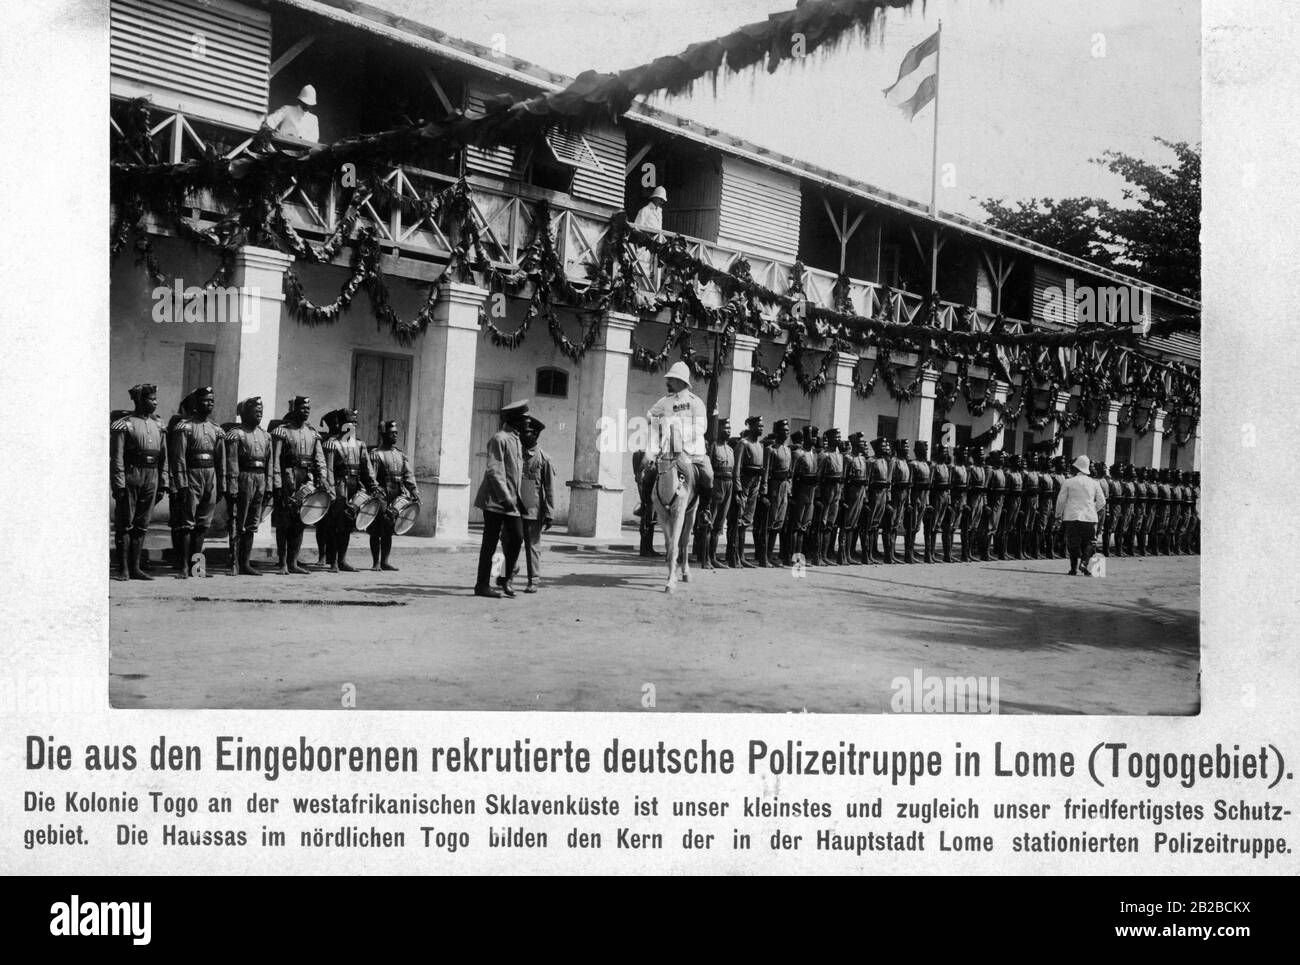 Der deutsche Polizeitrupp rekrutierte sich aus Eingeborenen in der togoischen Hauptstadt Lome in Deutschwestafrika. Männer aus dem Stamm der Haussas im Norden Togos bilden den Kern der Polizei, die ihren Sitz in Lome hat. Stockfoto